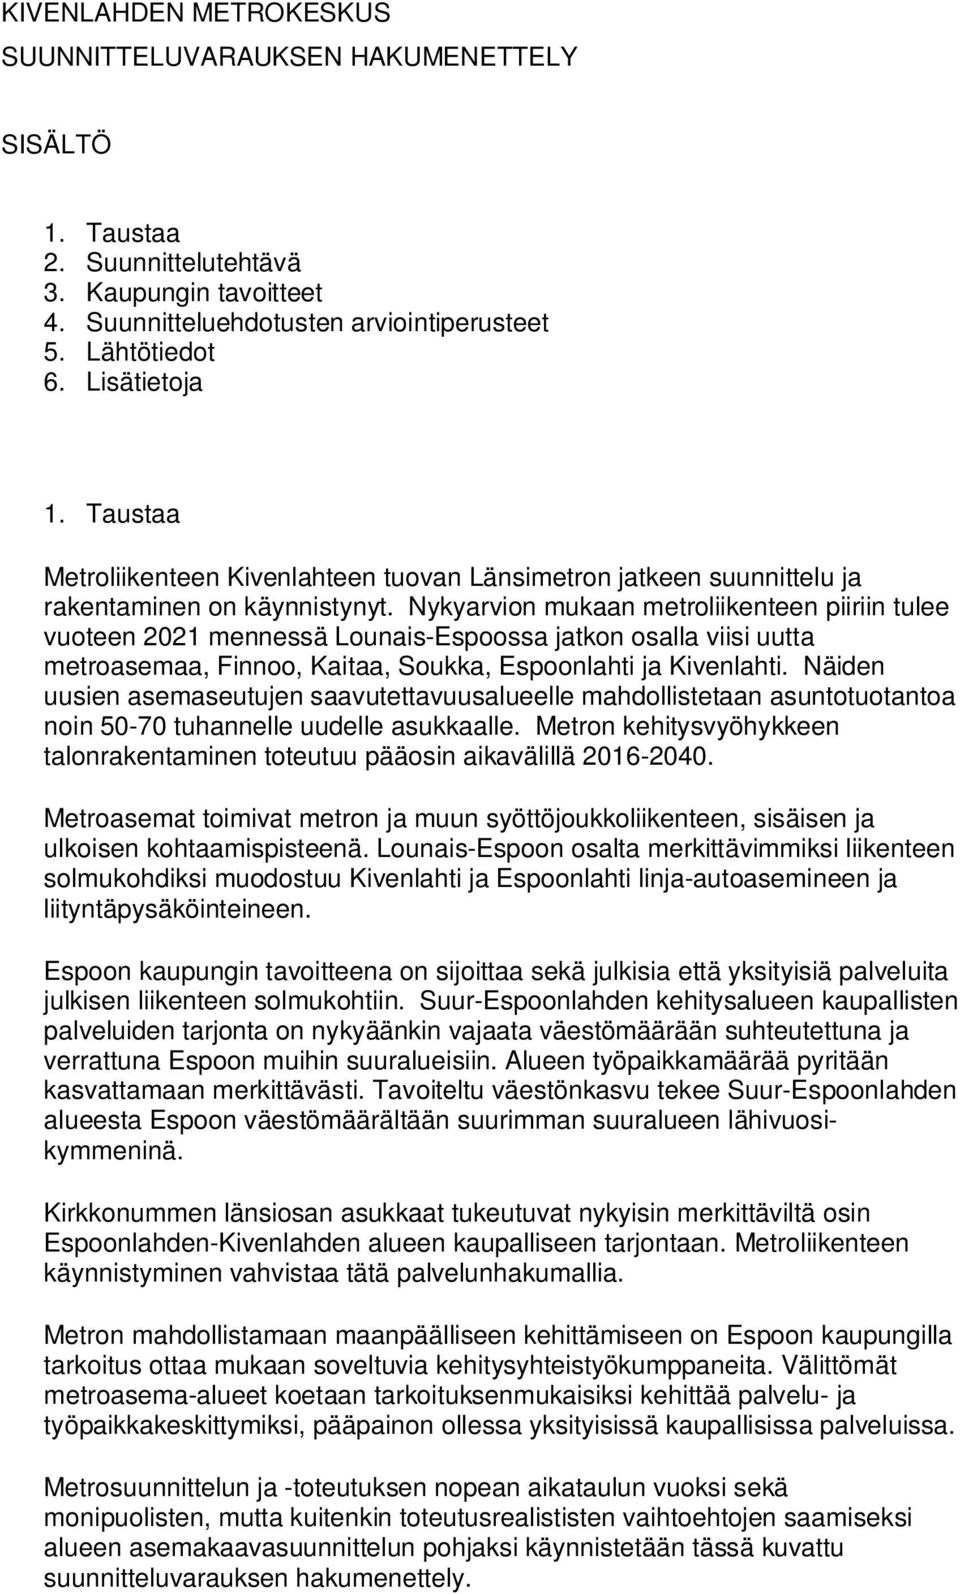 Nykyarvion mukaan metroliikenteen piiriin tulee vuoteen 2021 mennessä Lounais-Espoossa jatkon osalla viisi uutta metroasemaa, Finnoo, Kaitaa, Soukka, Espoonlahti ja Kivenlahti.